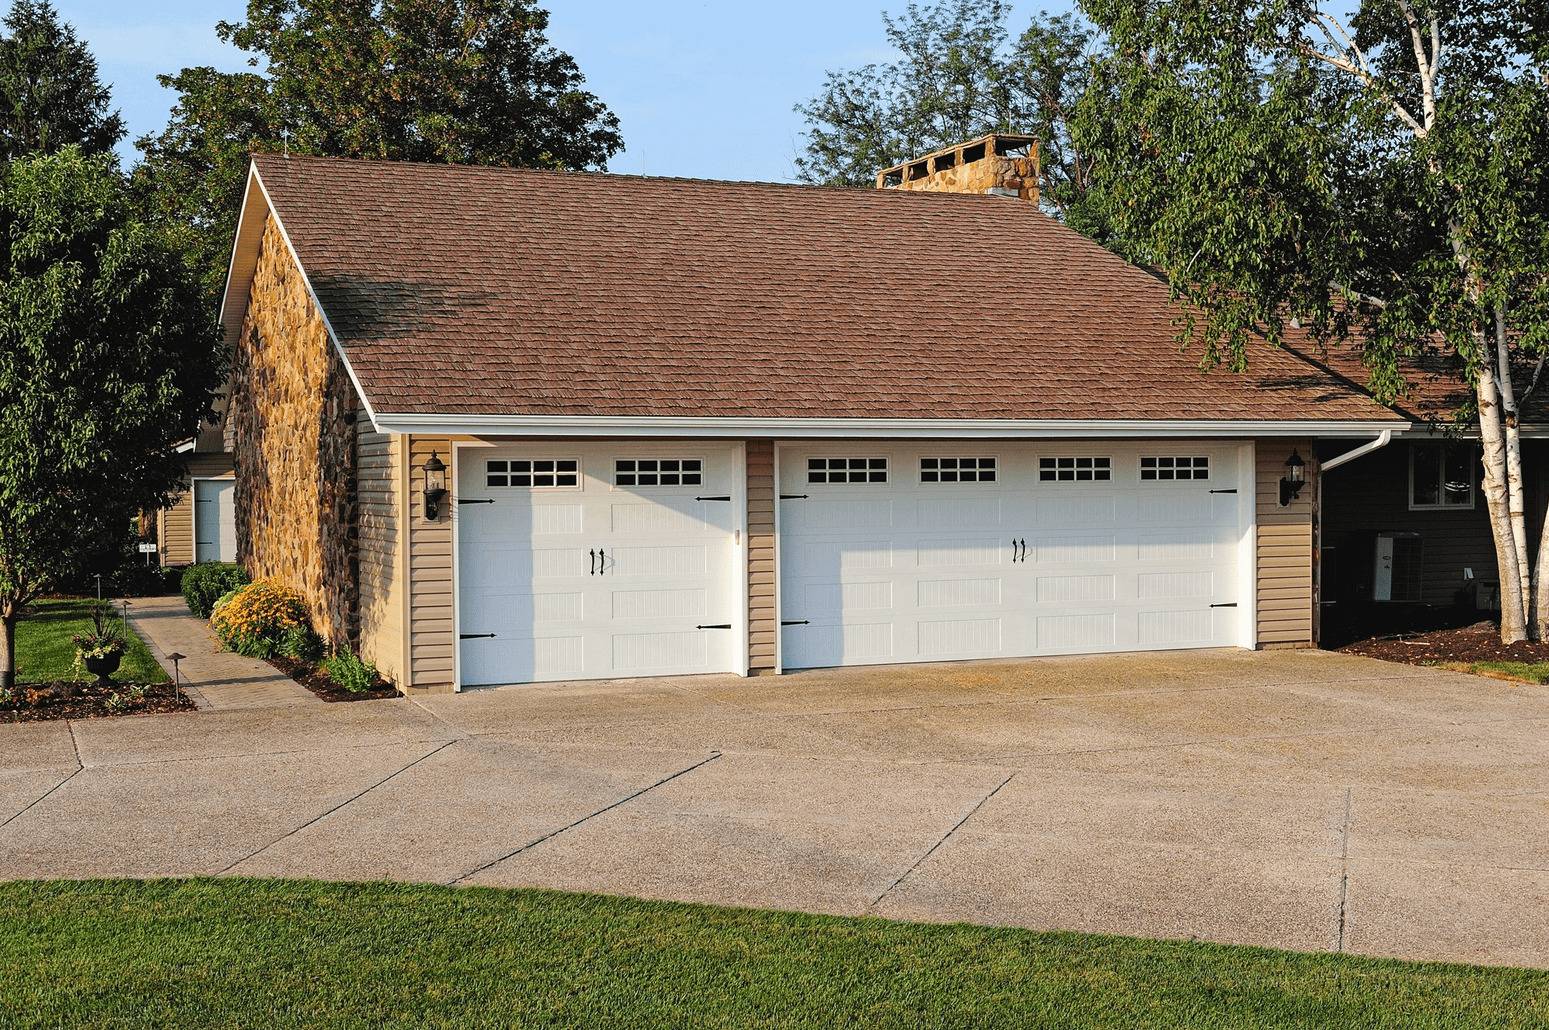 Stamped Carriage House Garage Door - Residential Garage Doors - Garage Door Services, Inc. Omaha